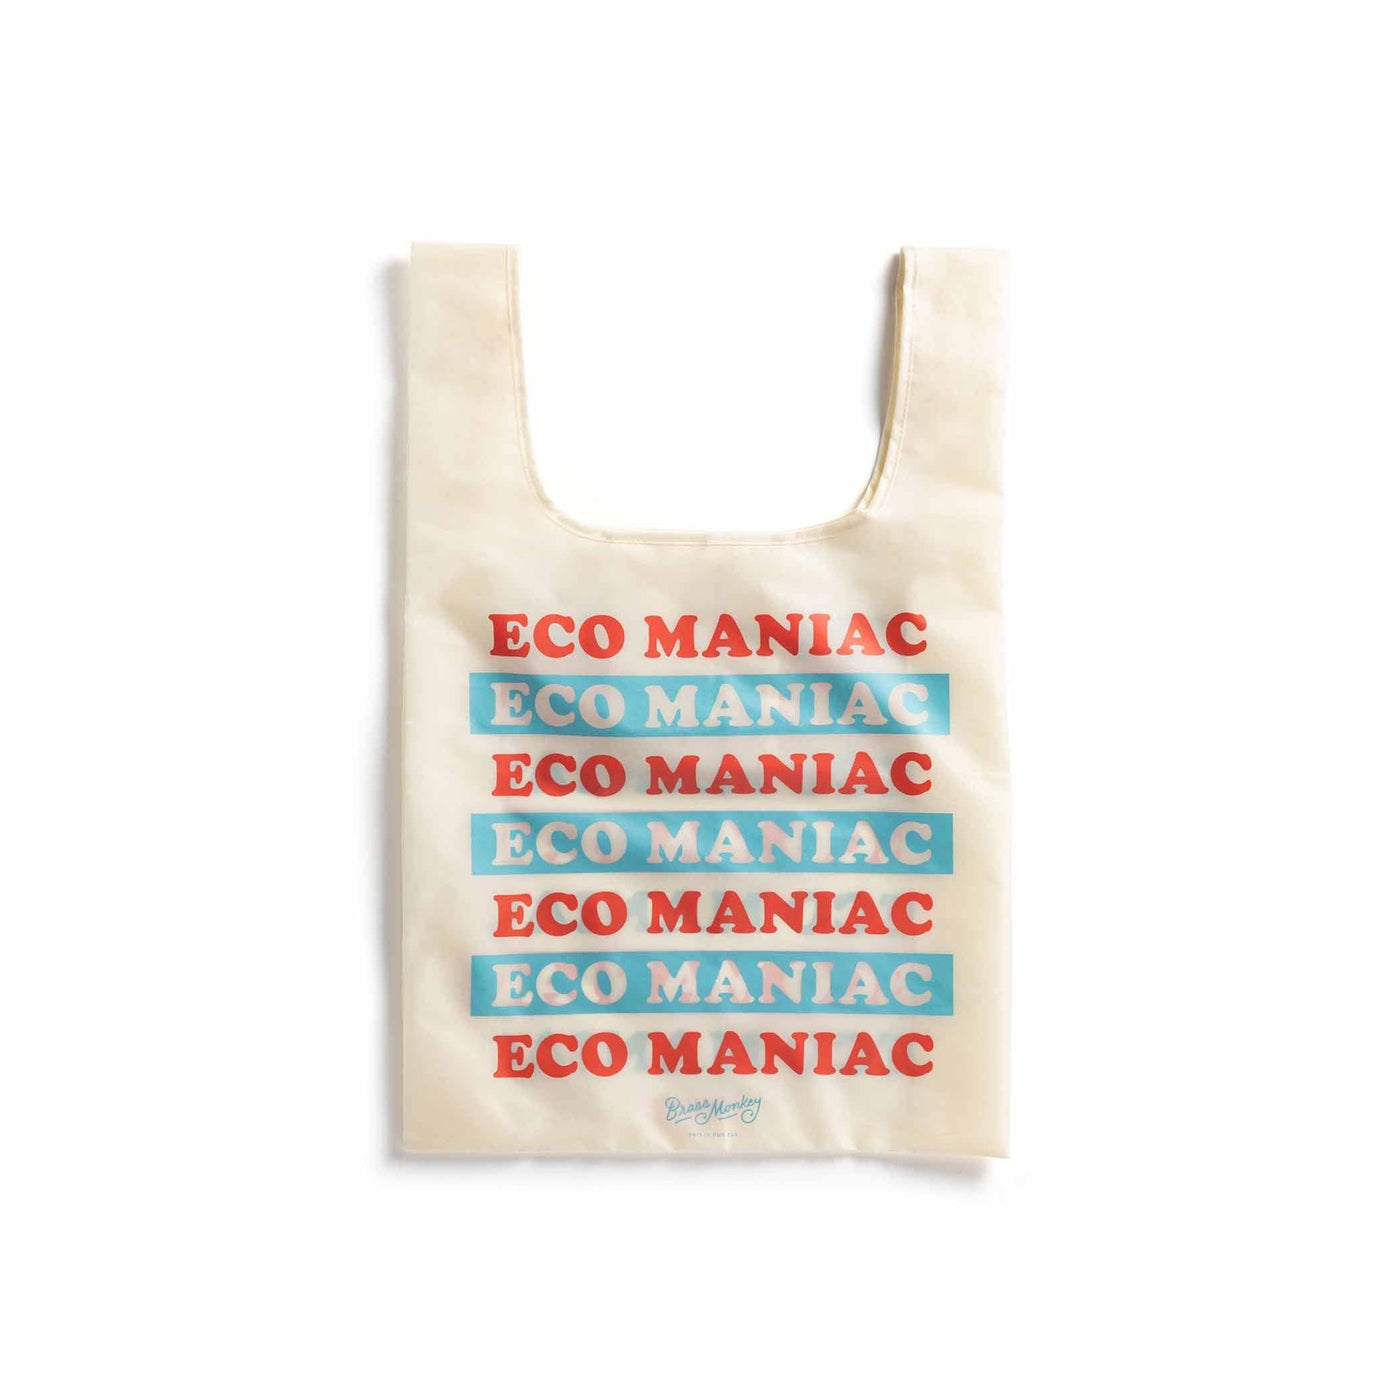 Optez pour l'éco-style avec le tote bag en nylon indéchirable de Brass Monkey. Durable, pratique et arborant l'illustration 'Eco Maniac', il devient votre allié pour des courses écologiques au quotidien.